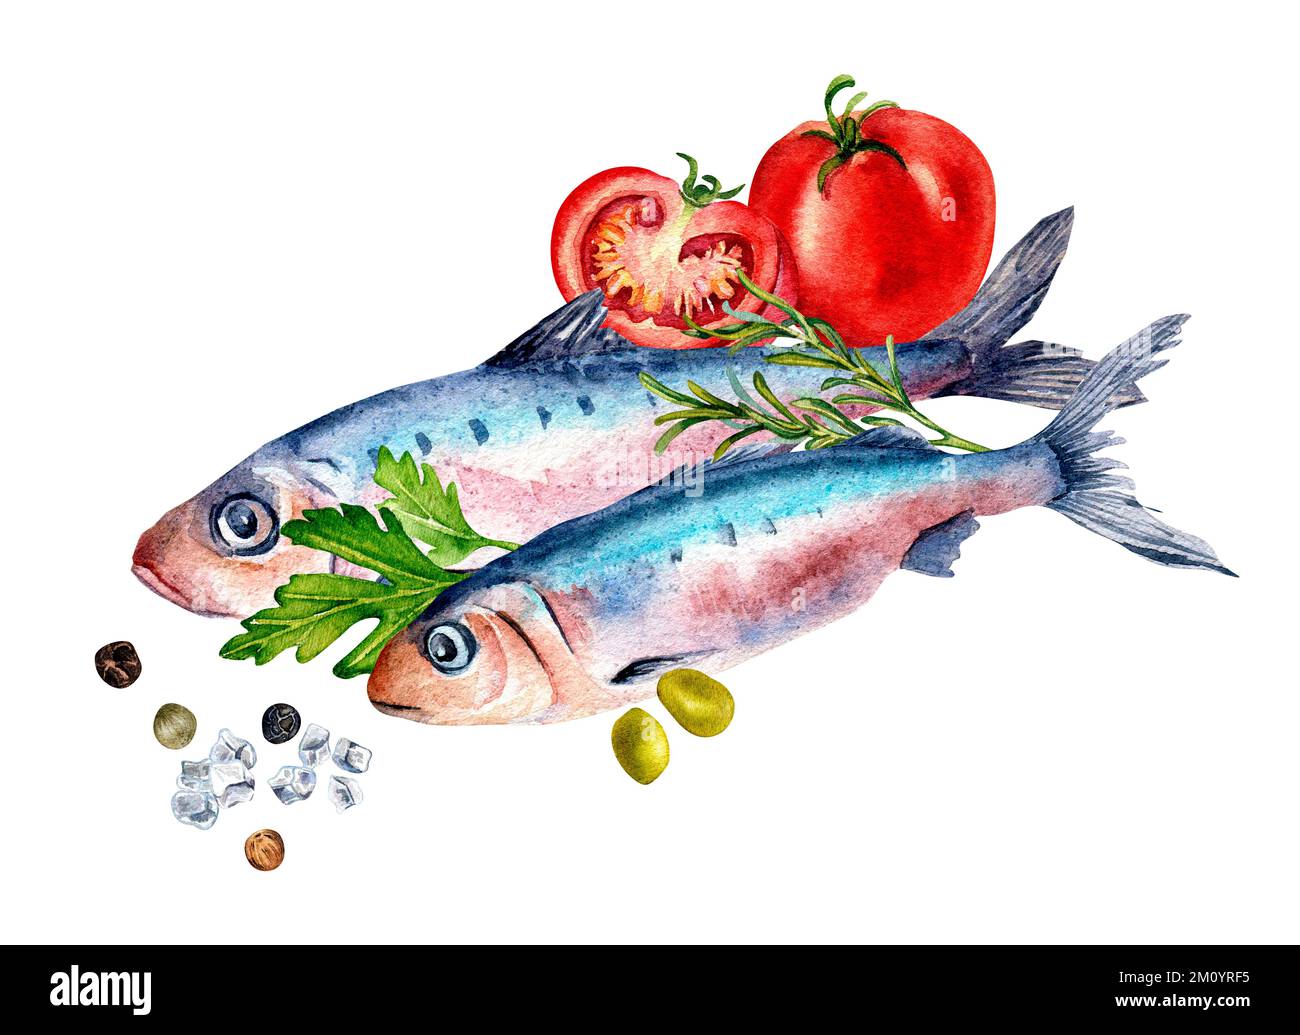 Composition des sardines et des épices aquarelle illustration isolée sur blanc. Poisson frais de l'Atlantique, tomates, persil, olives dessinées à la main. Conception des élémes Banque D'Images